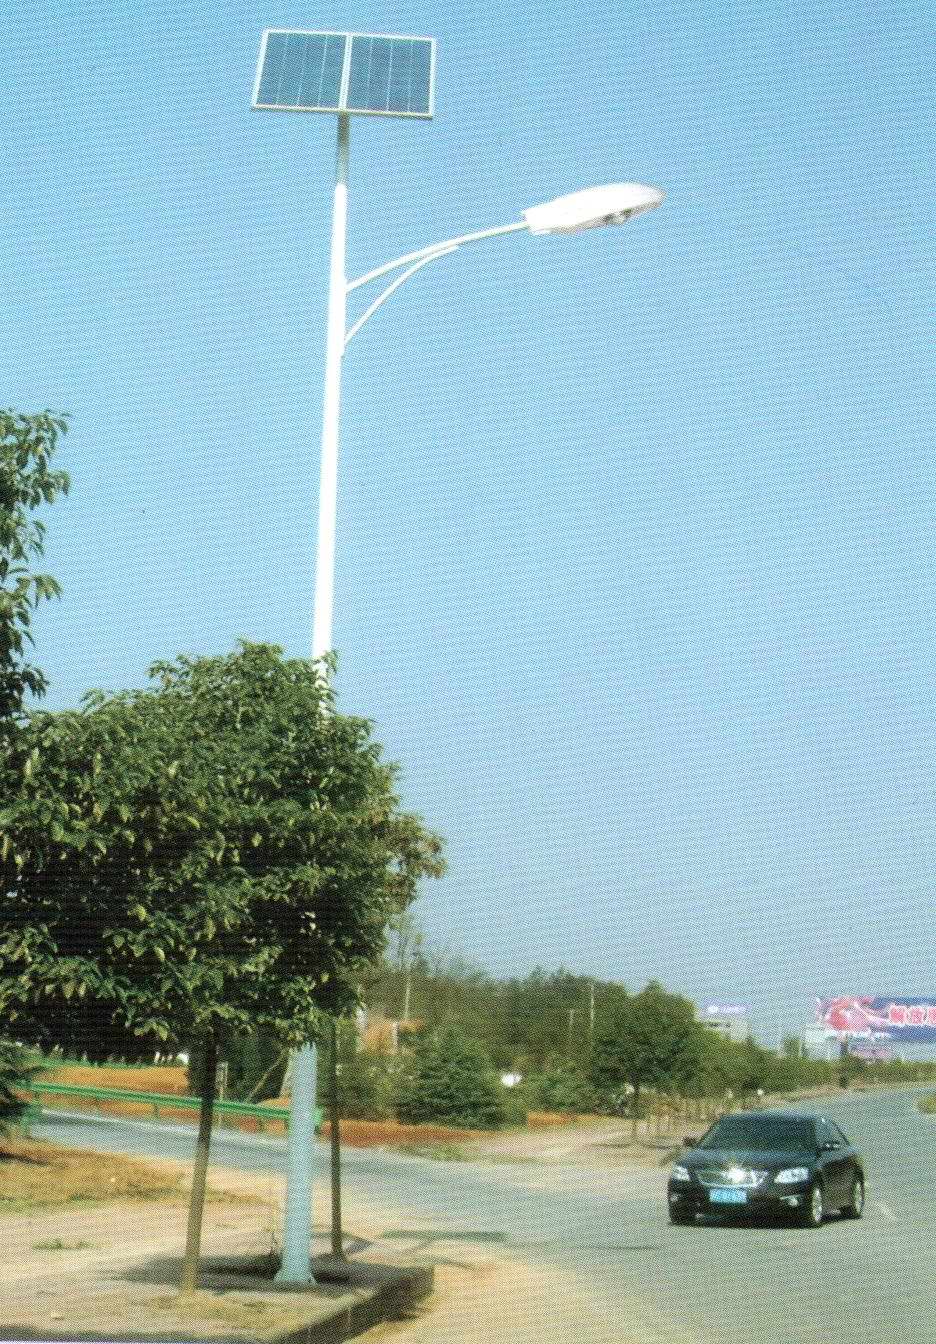 这是开封路灯厂家跟我们特殊定制的样式，在当地非常流行，成为开封新农村标准路灯样式